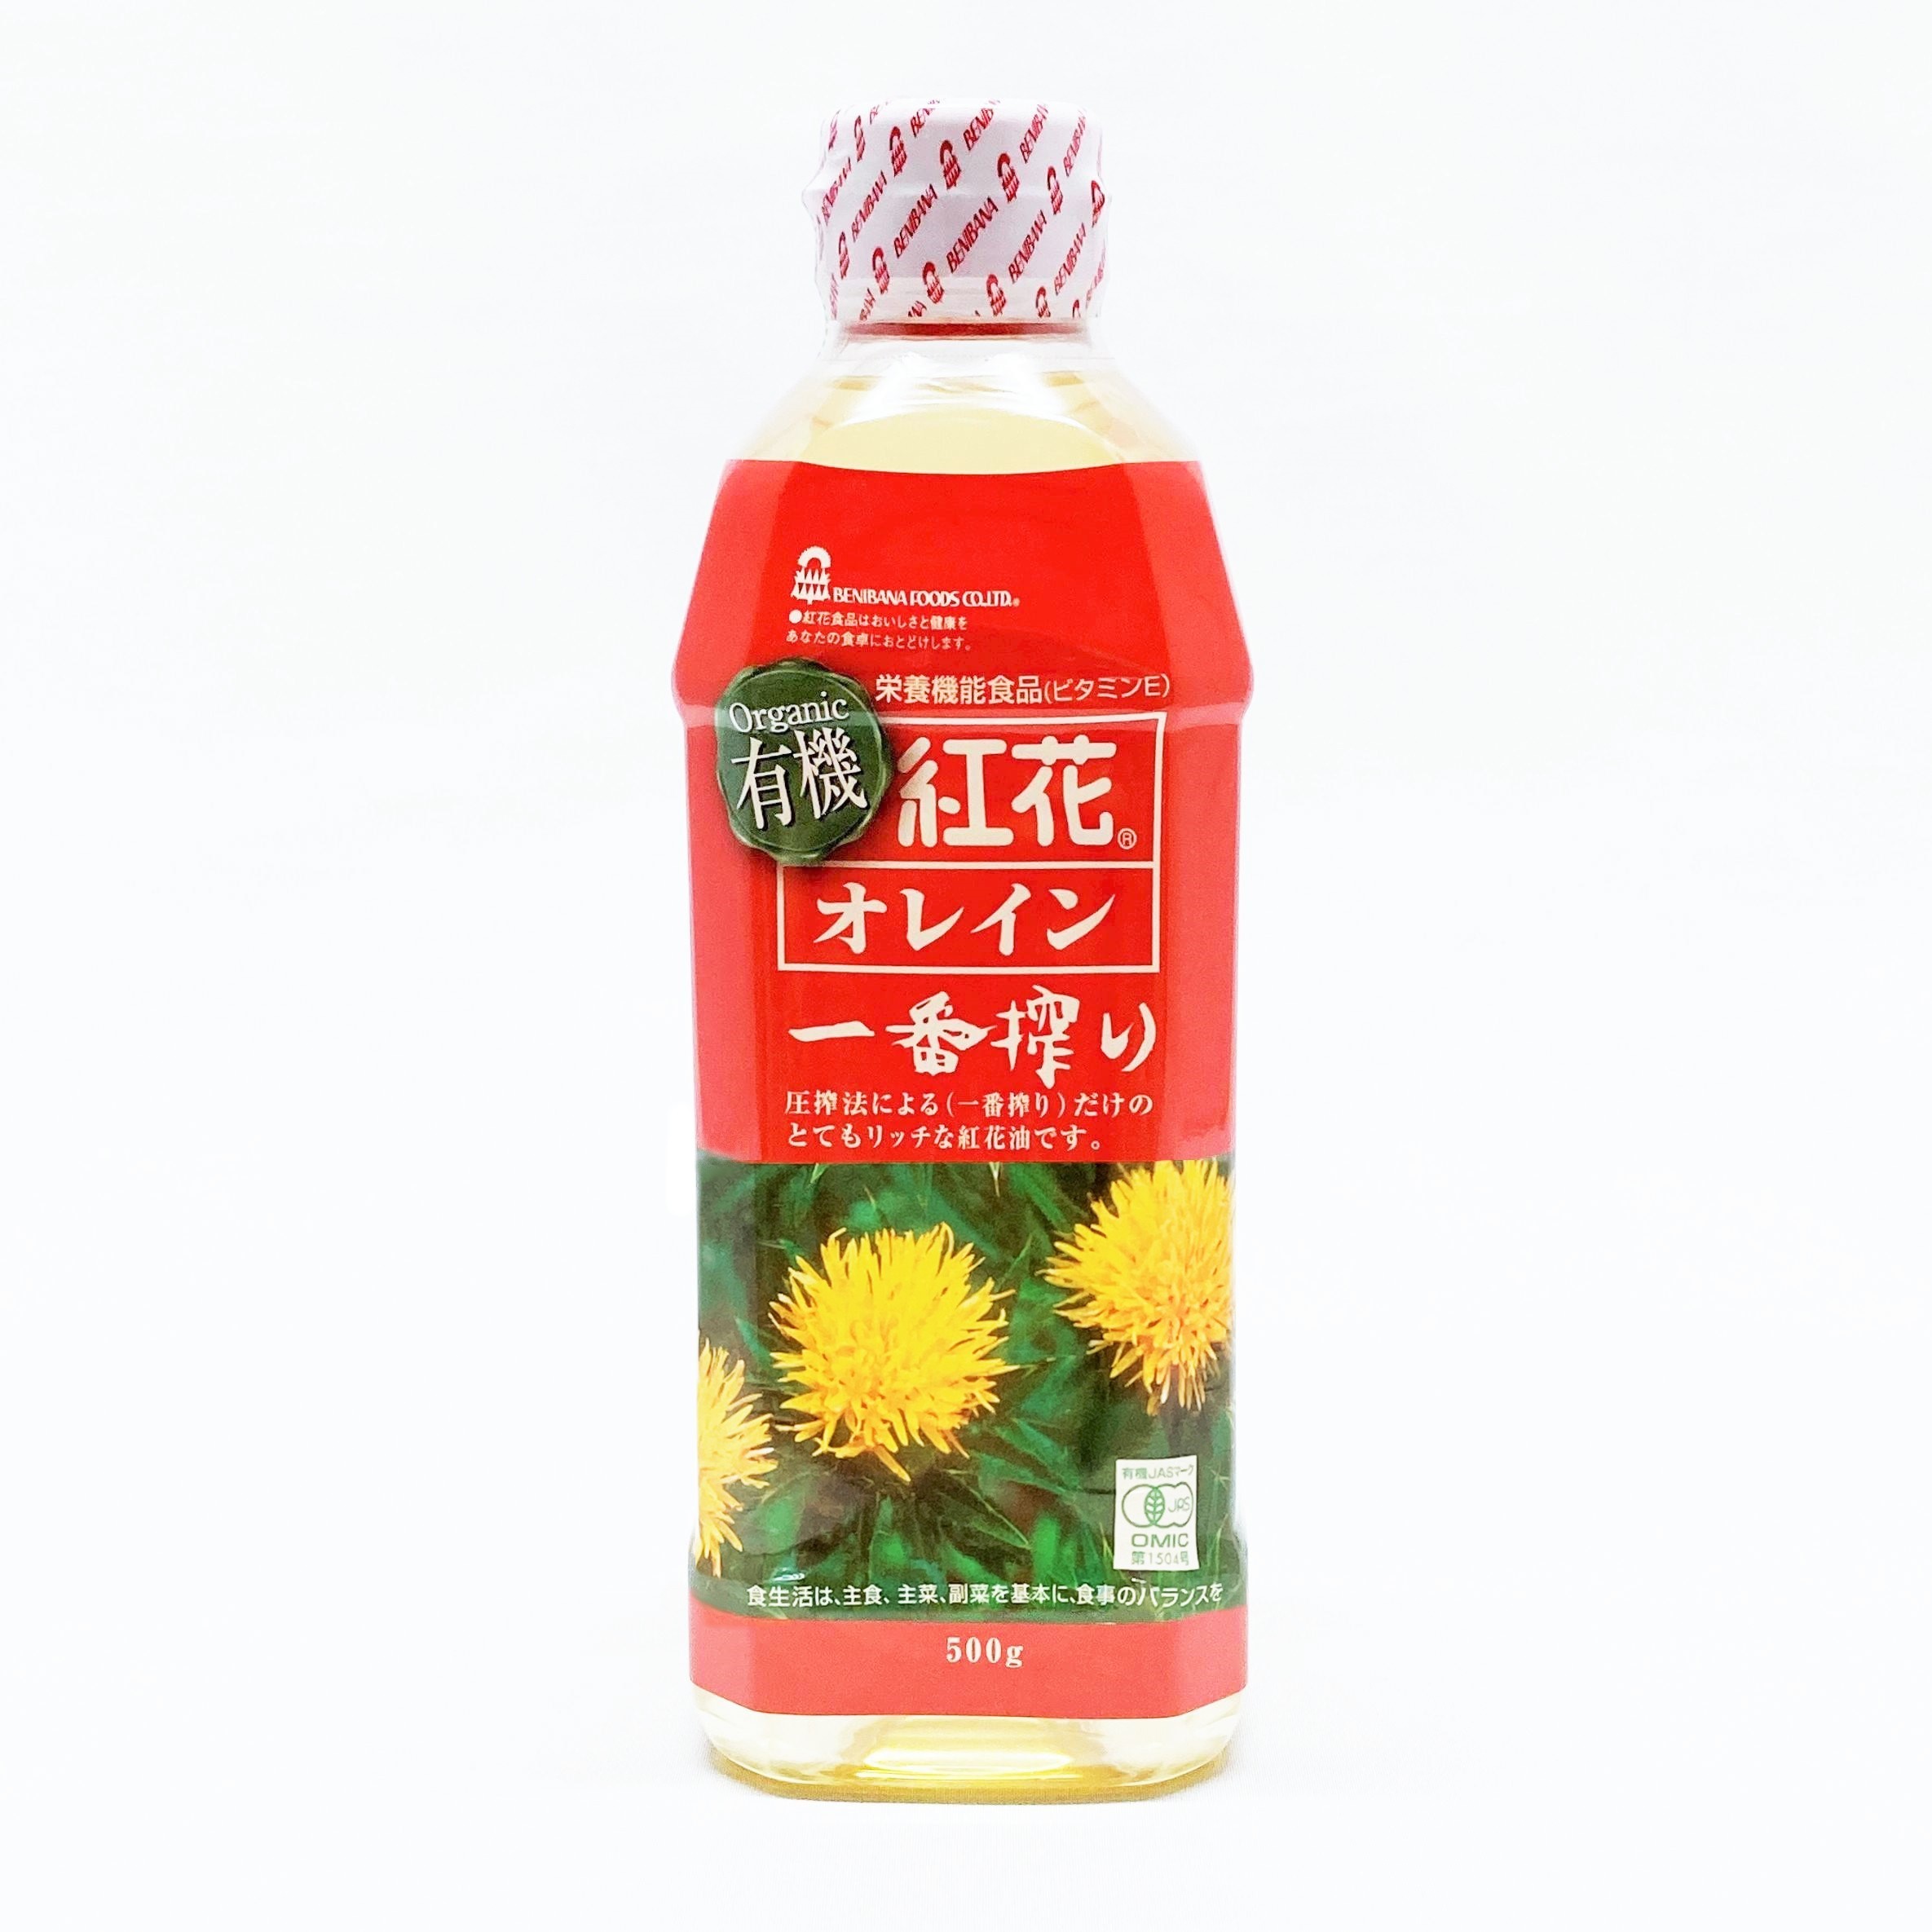 手数料安い 紅花オレイン一番搾り 有機 500g オーガニック 紅花食品 べに花油 栄養機能食品 ビタミンE hanuinosato.jp